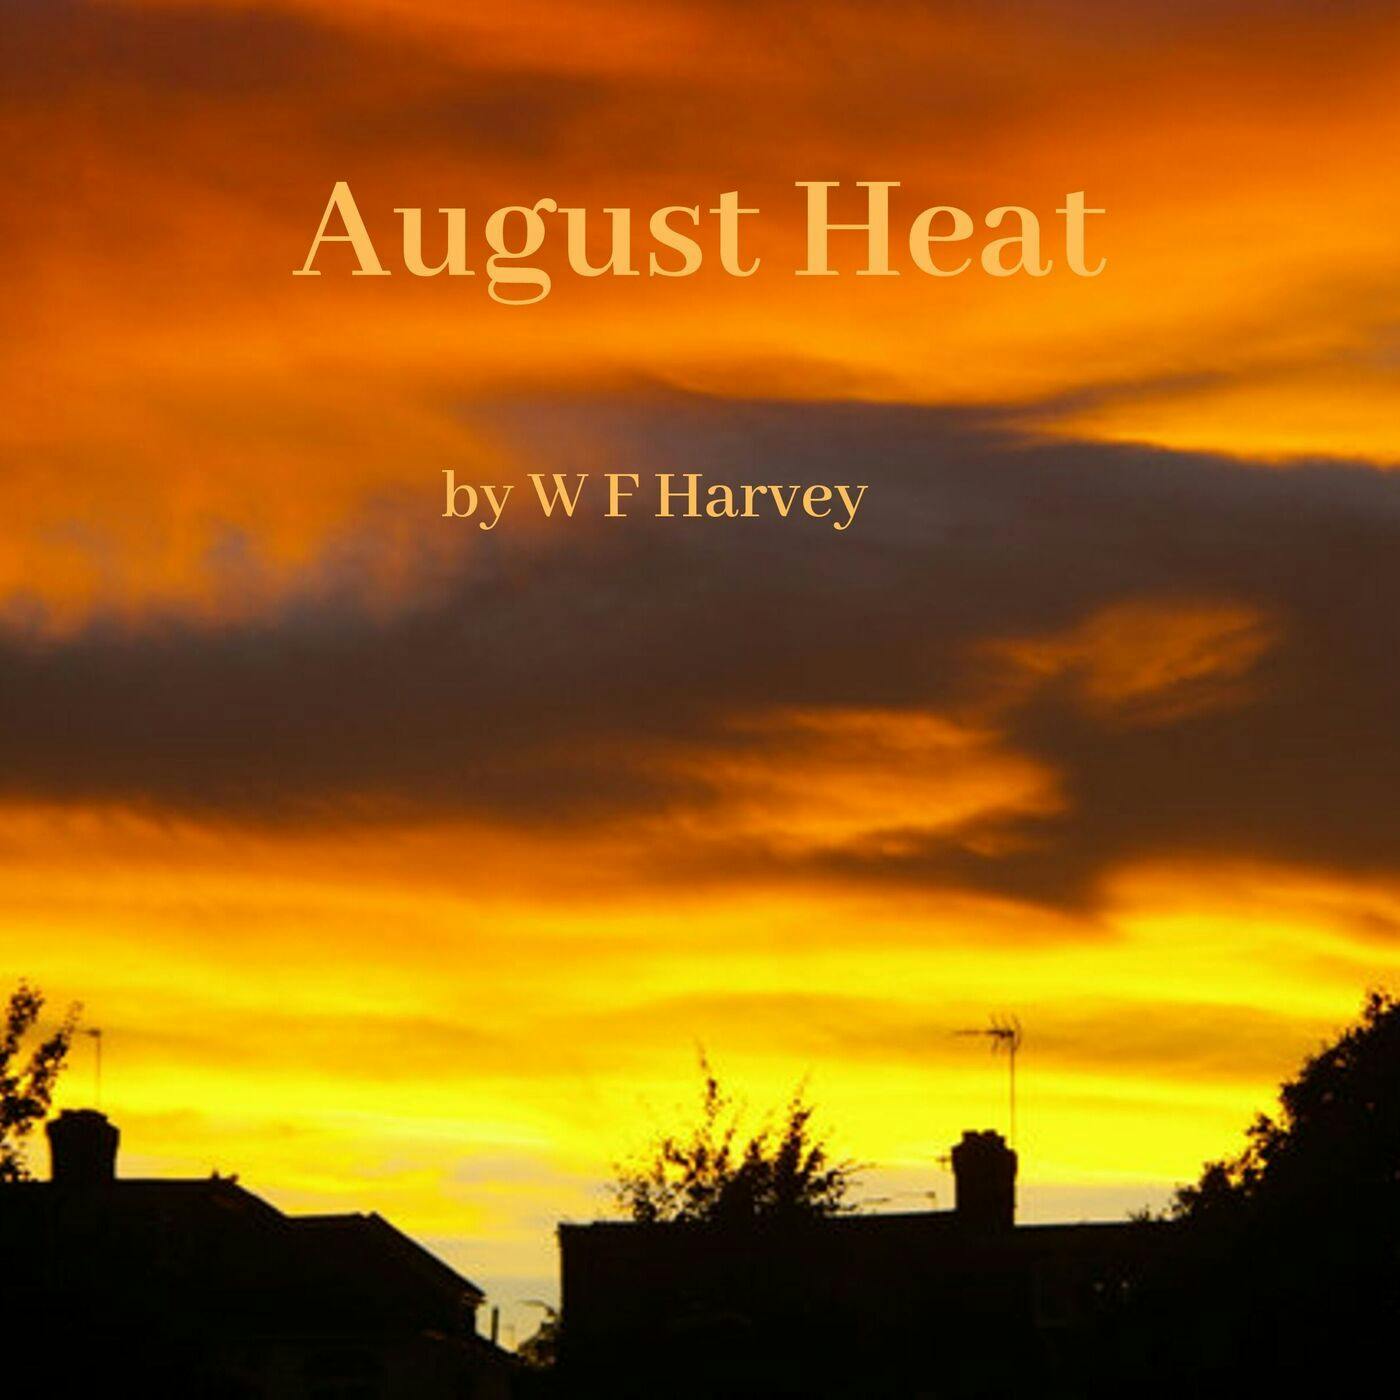 Episode 5: August Heat by W F Harvey